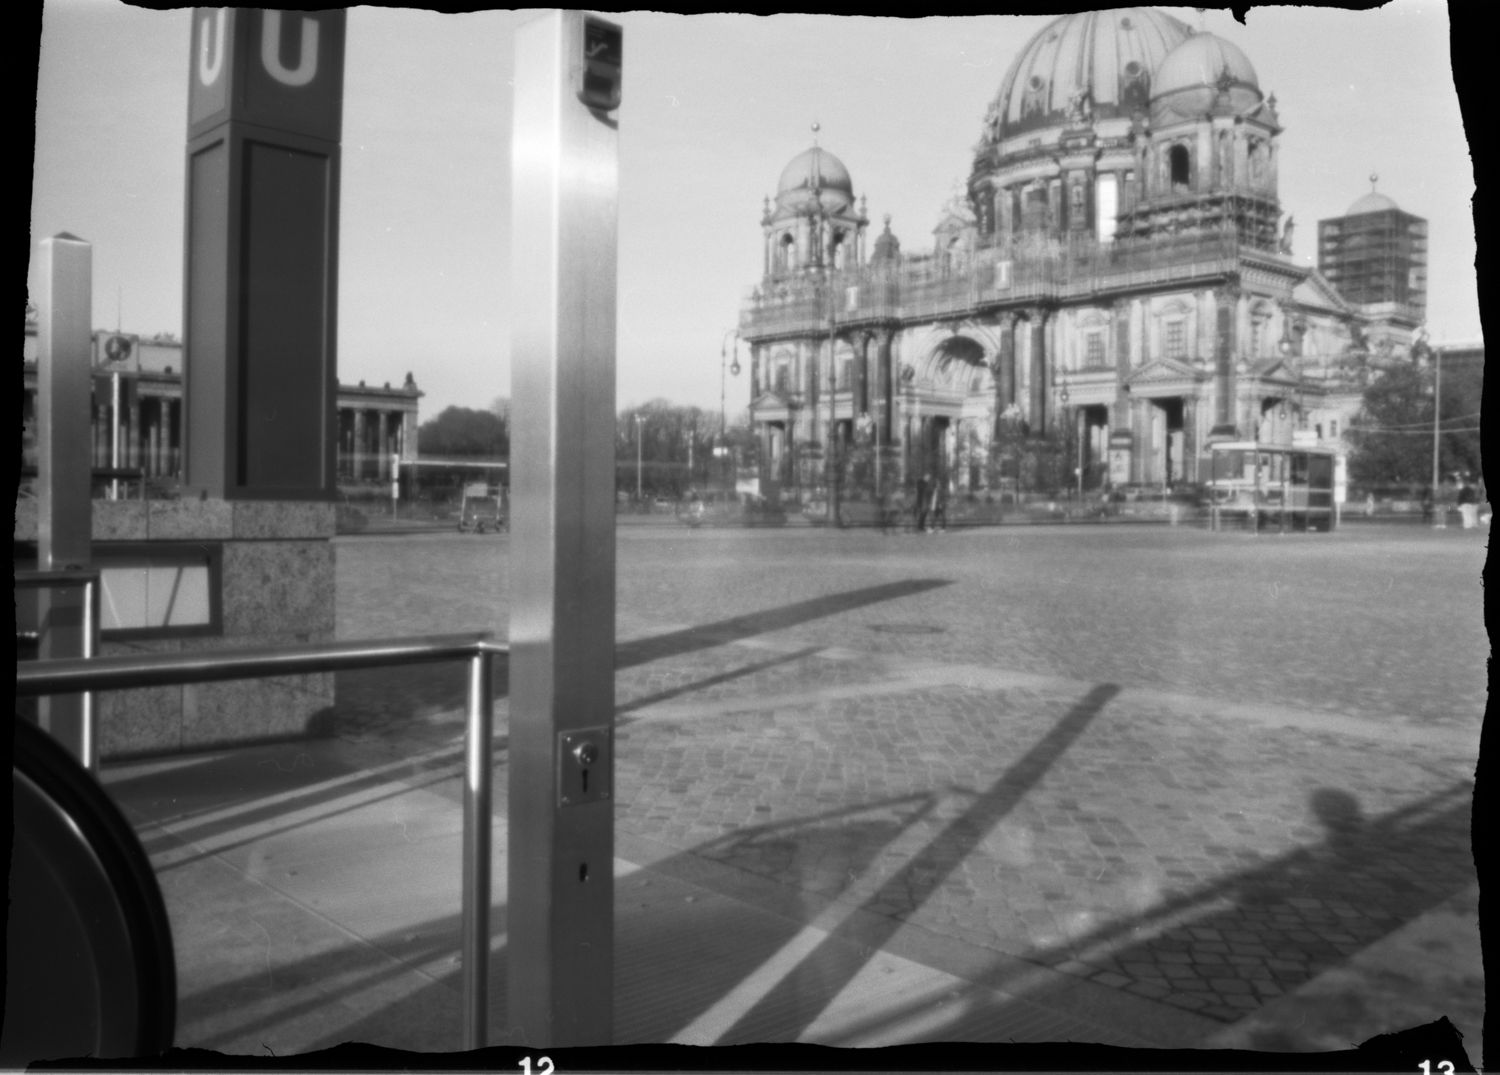 Lochkamera Fotografie des Berliner Dom von der neuen U-Bahn Station am Humboldt Forum fotografiert.